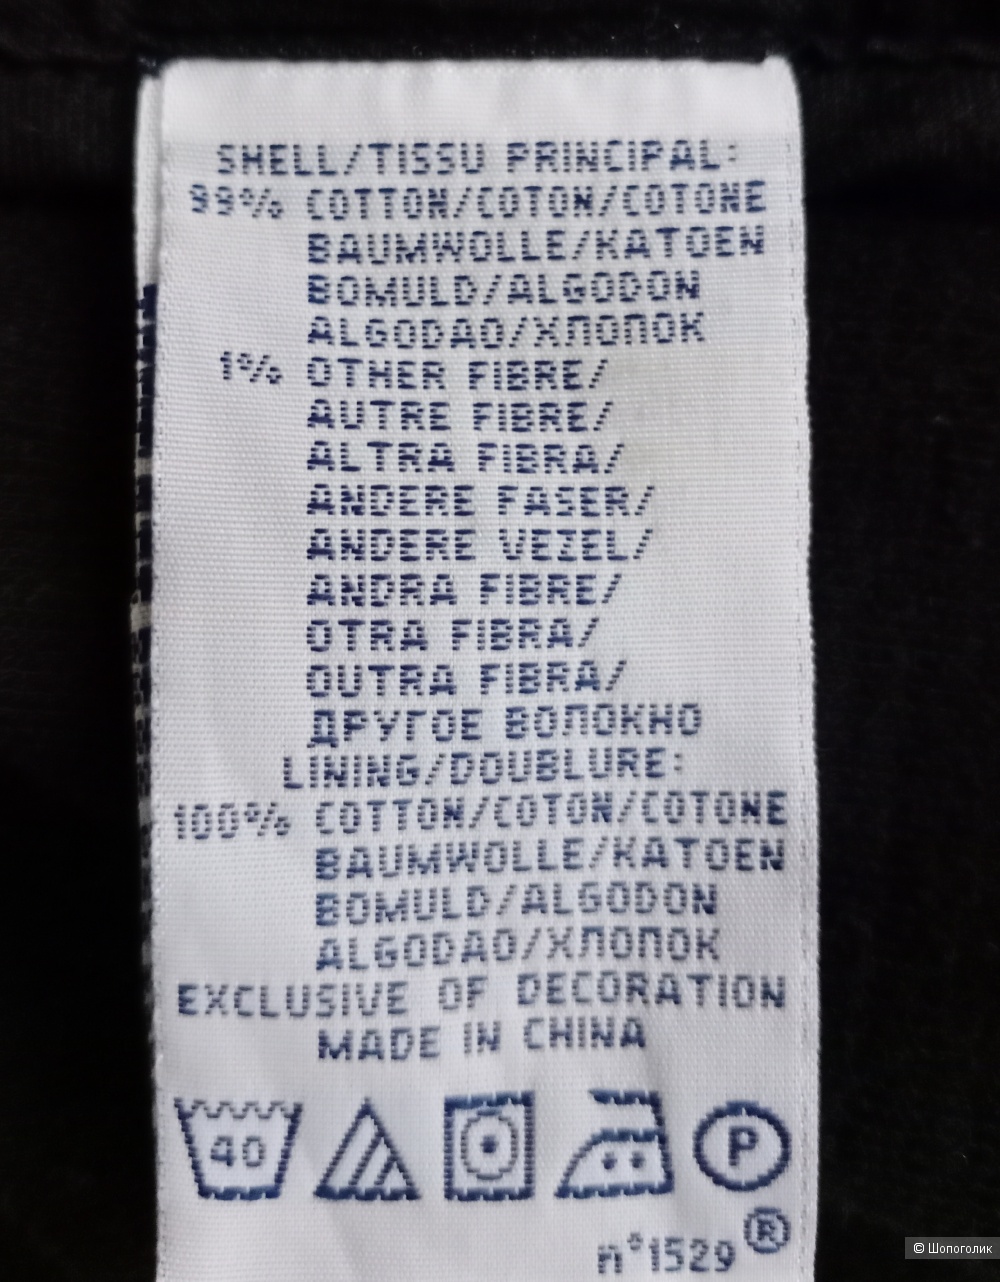 Пиджак  Ralph Lauren, 50-52 размер